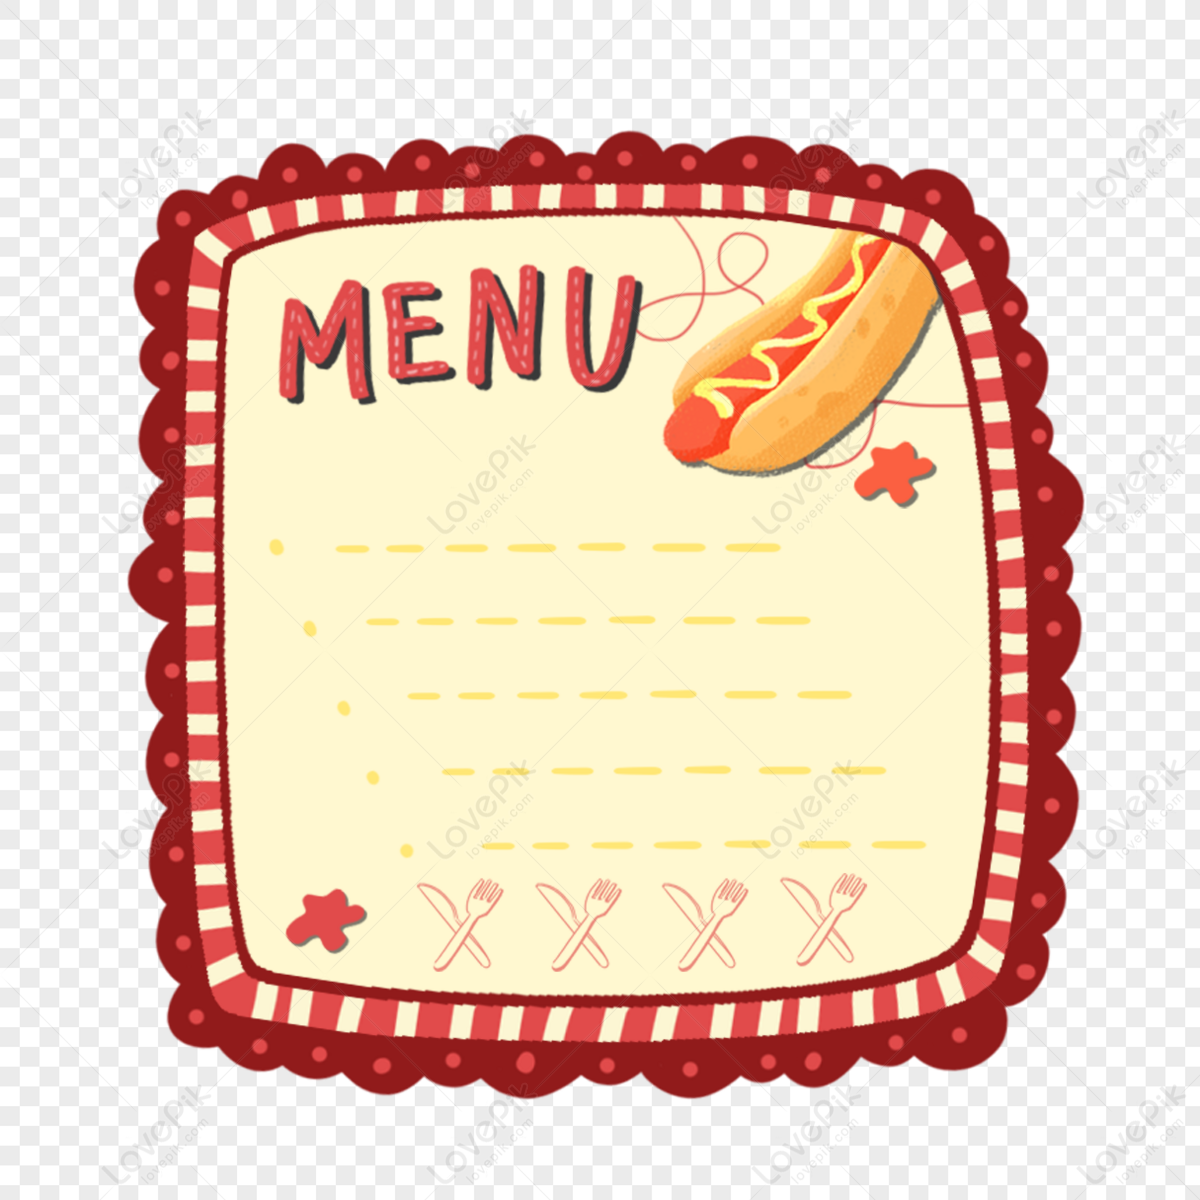 Bạn muốn tìm những hình ảnh chất lượng về các menu ẩm thực để trình bày trên trang web của mình hay thiết kế thiệp mời của mình? Hãy xem qua những hình ảnh liên quan đến từ khóa Menu PNG Images, bạn sẽ làm hài lòng các vị khách của mình.